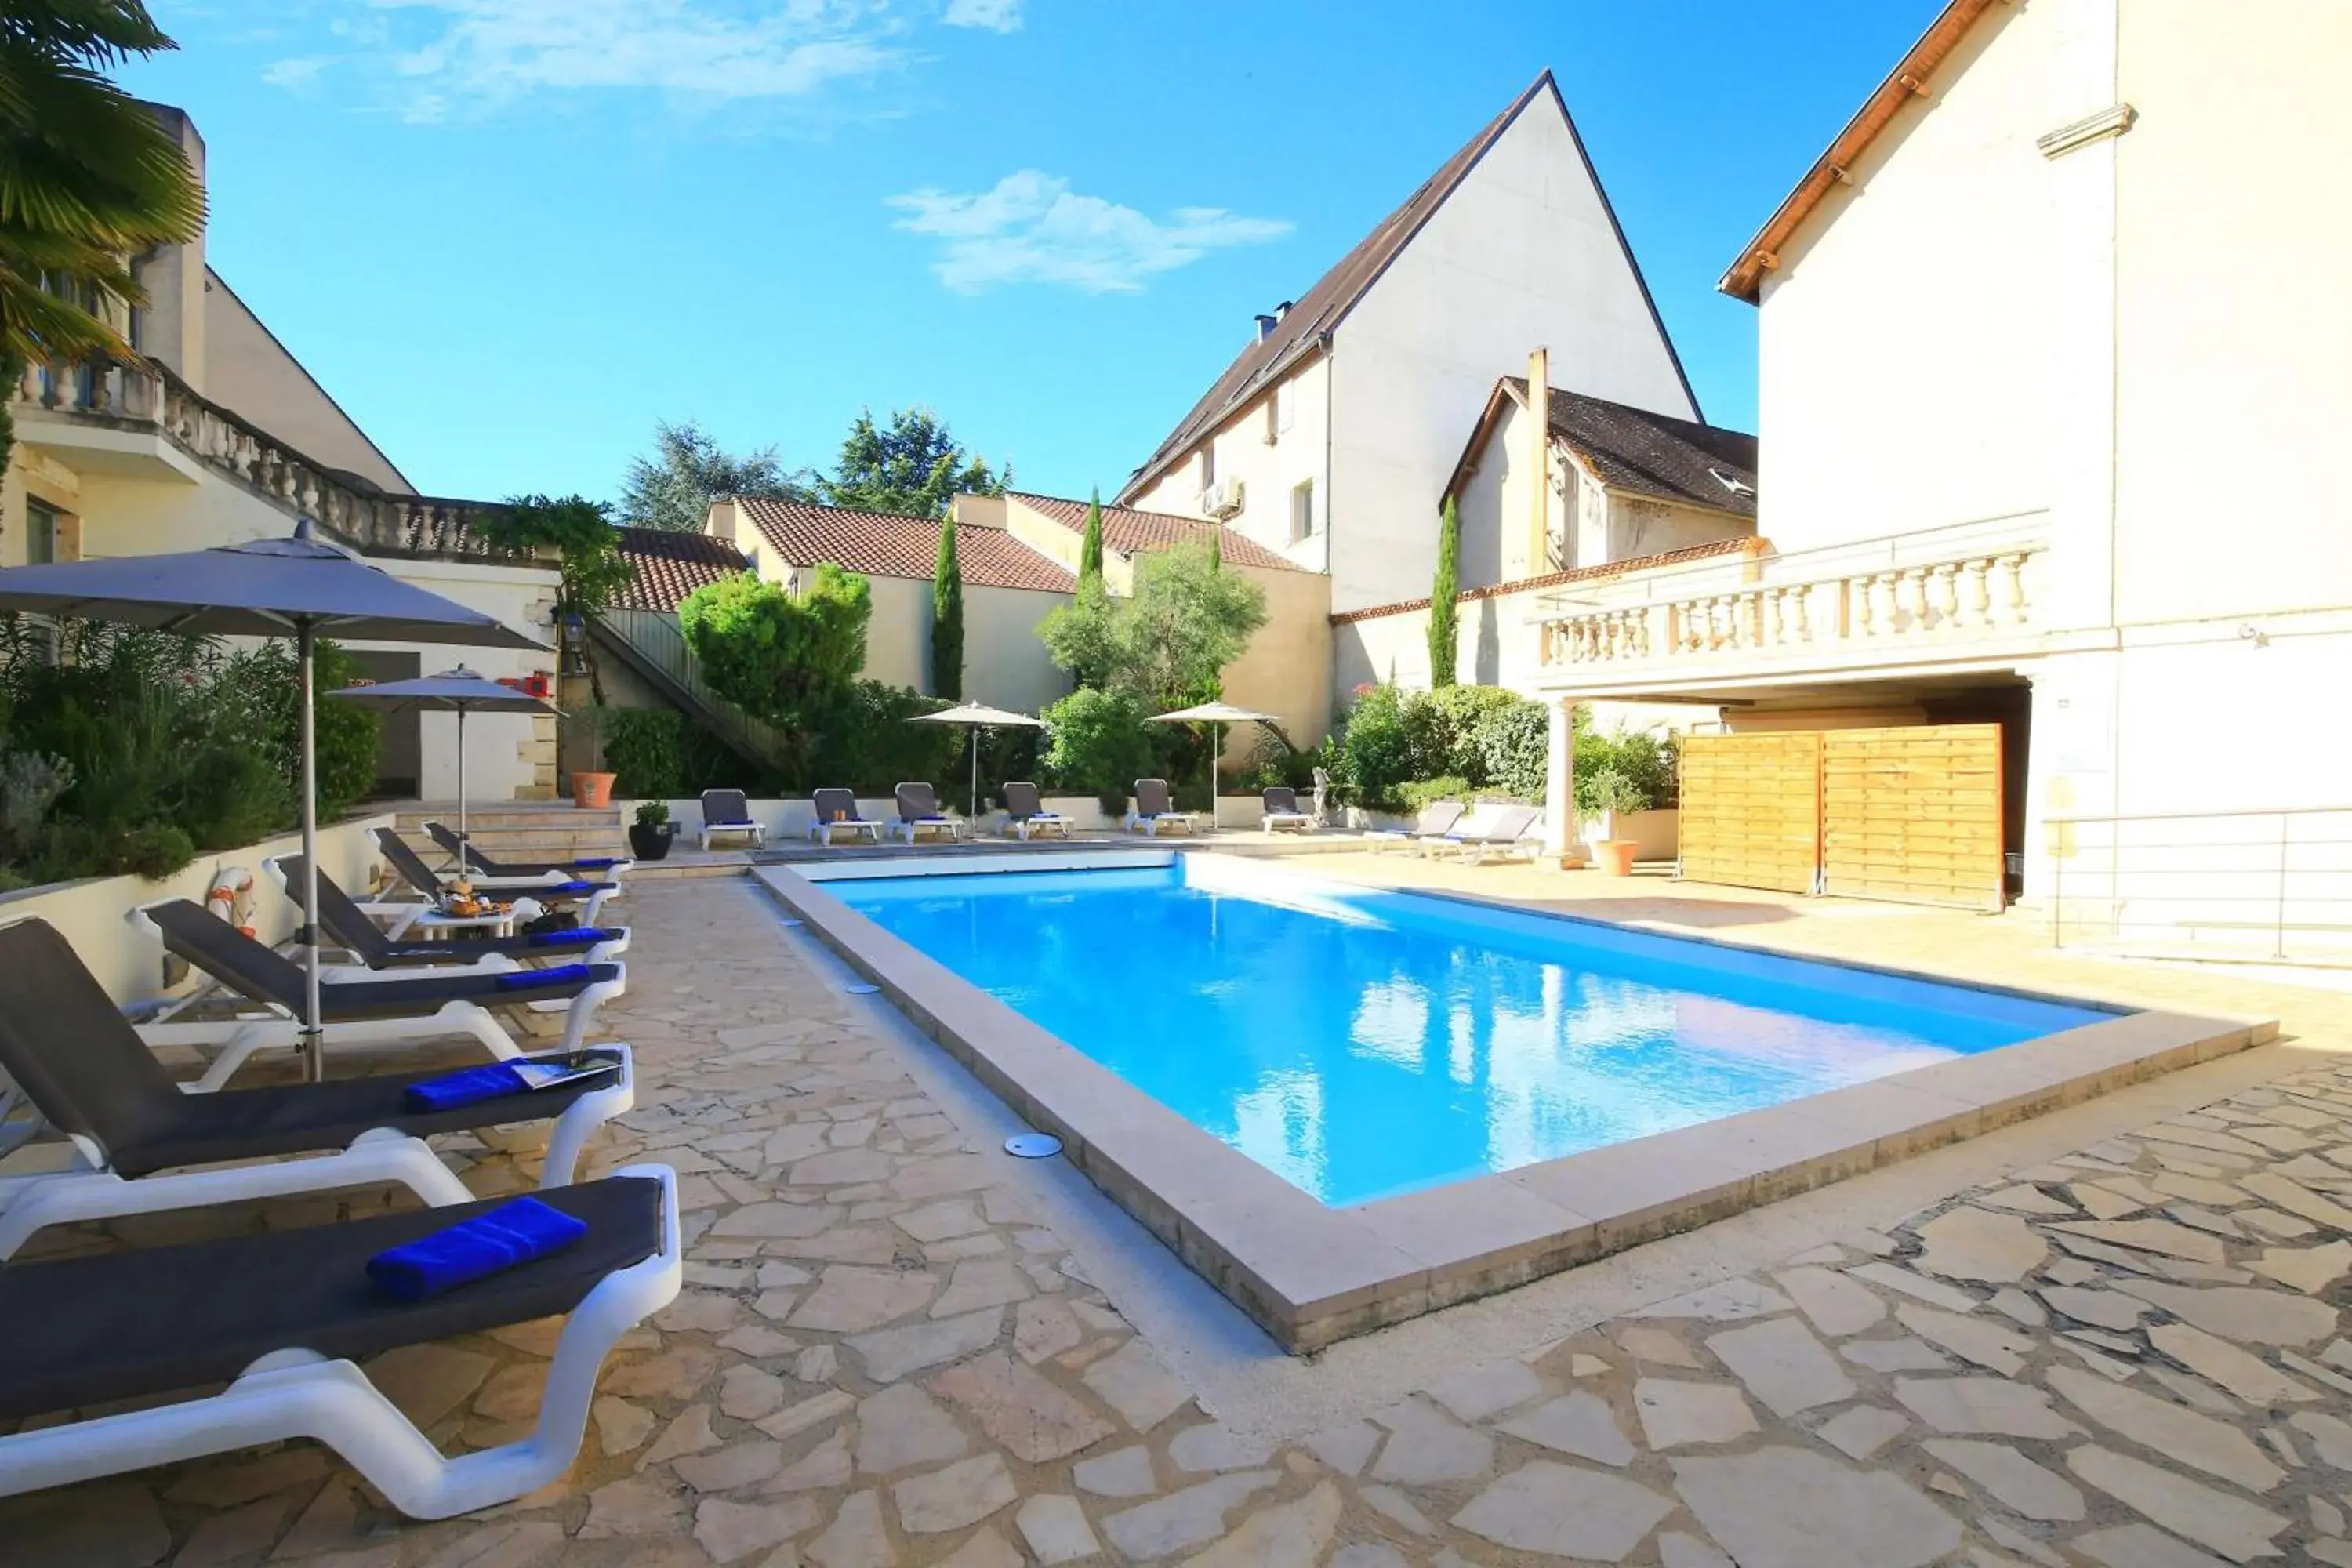 Property building, Swimming Pool in Best Western Le Renoir